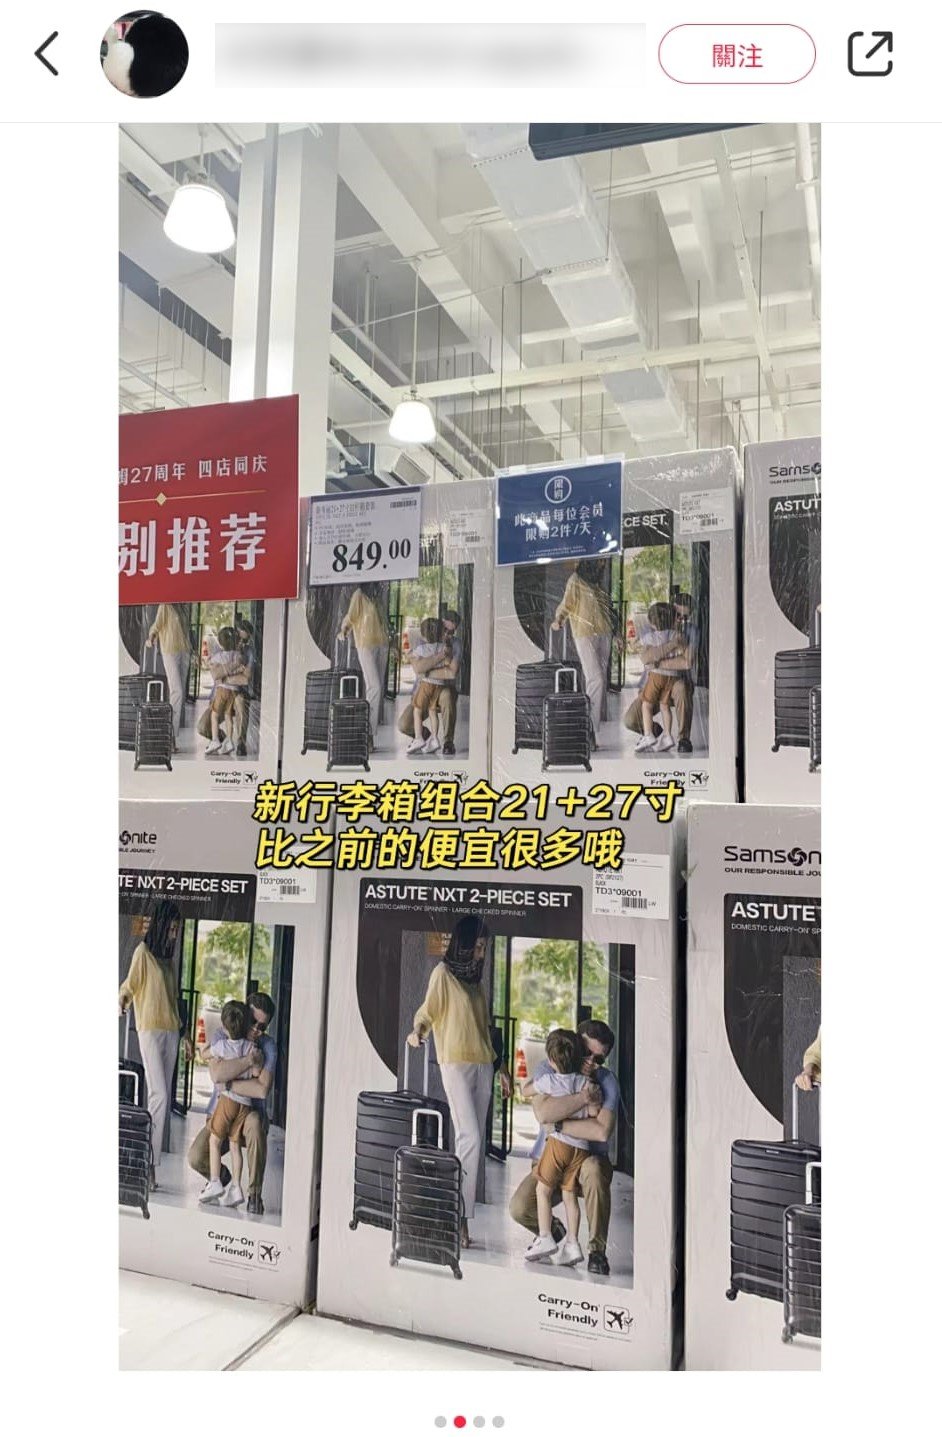 类似的21寸及27寸旅行喼套装在山姆超巿售¥849。小红书图片